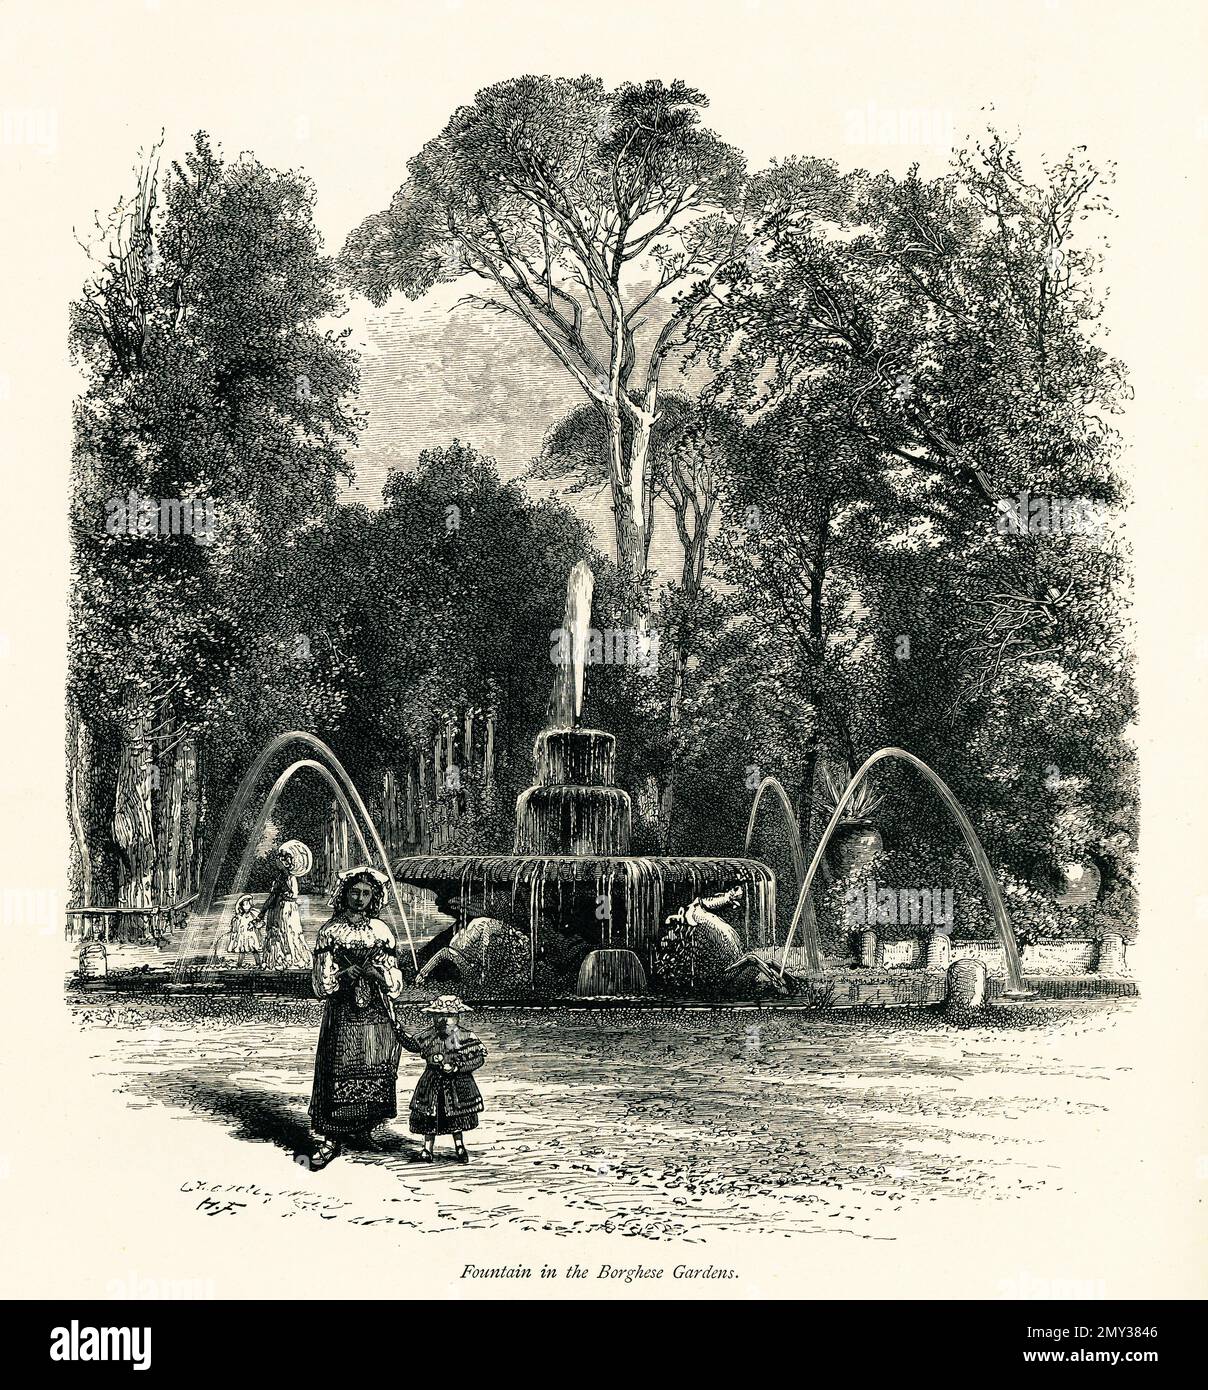 Antica illustrazione di una fontana nei giardini di Villa Borghese, Roma, Italia. Incisione pubblicata in picturesque Europe, Vol. III (Cassell & Company, Foto Stock